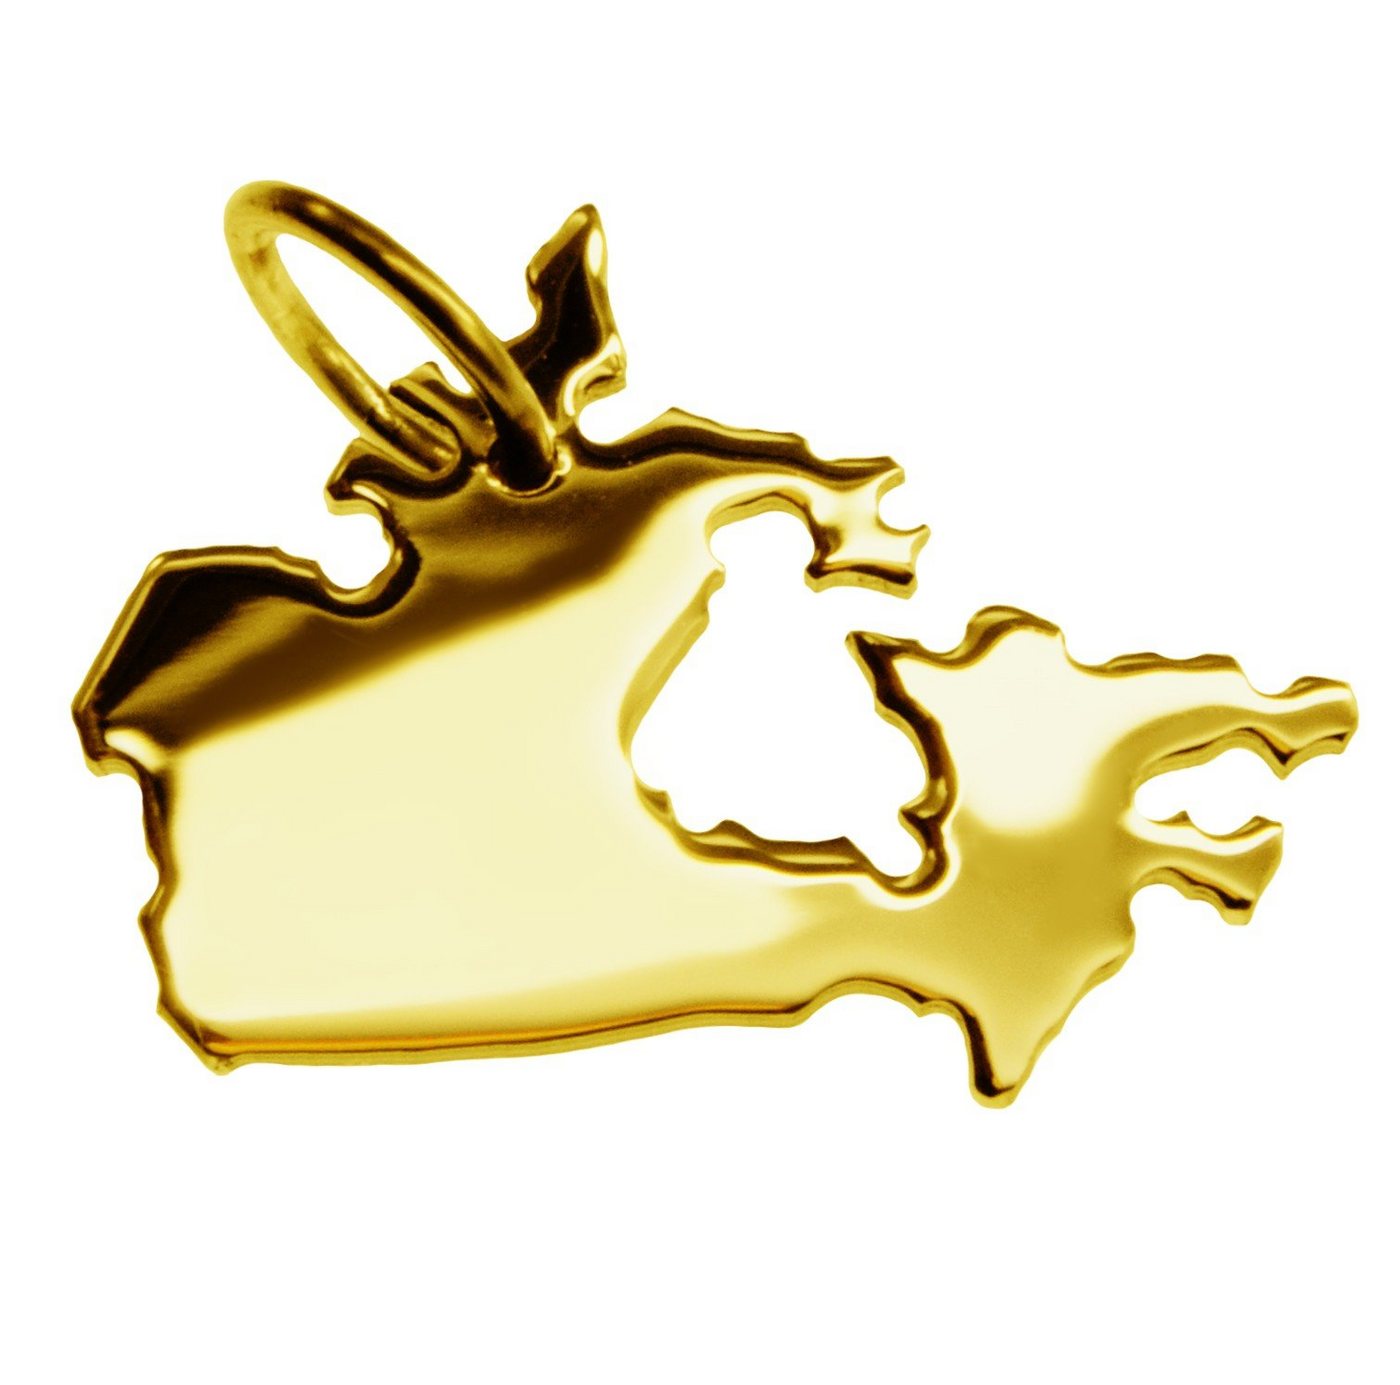 schmuckador Kettenanhänger Kettenanhänger in der Form von der Landkarte Kanada in massiv 333 Gelbgold von schmuckador